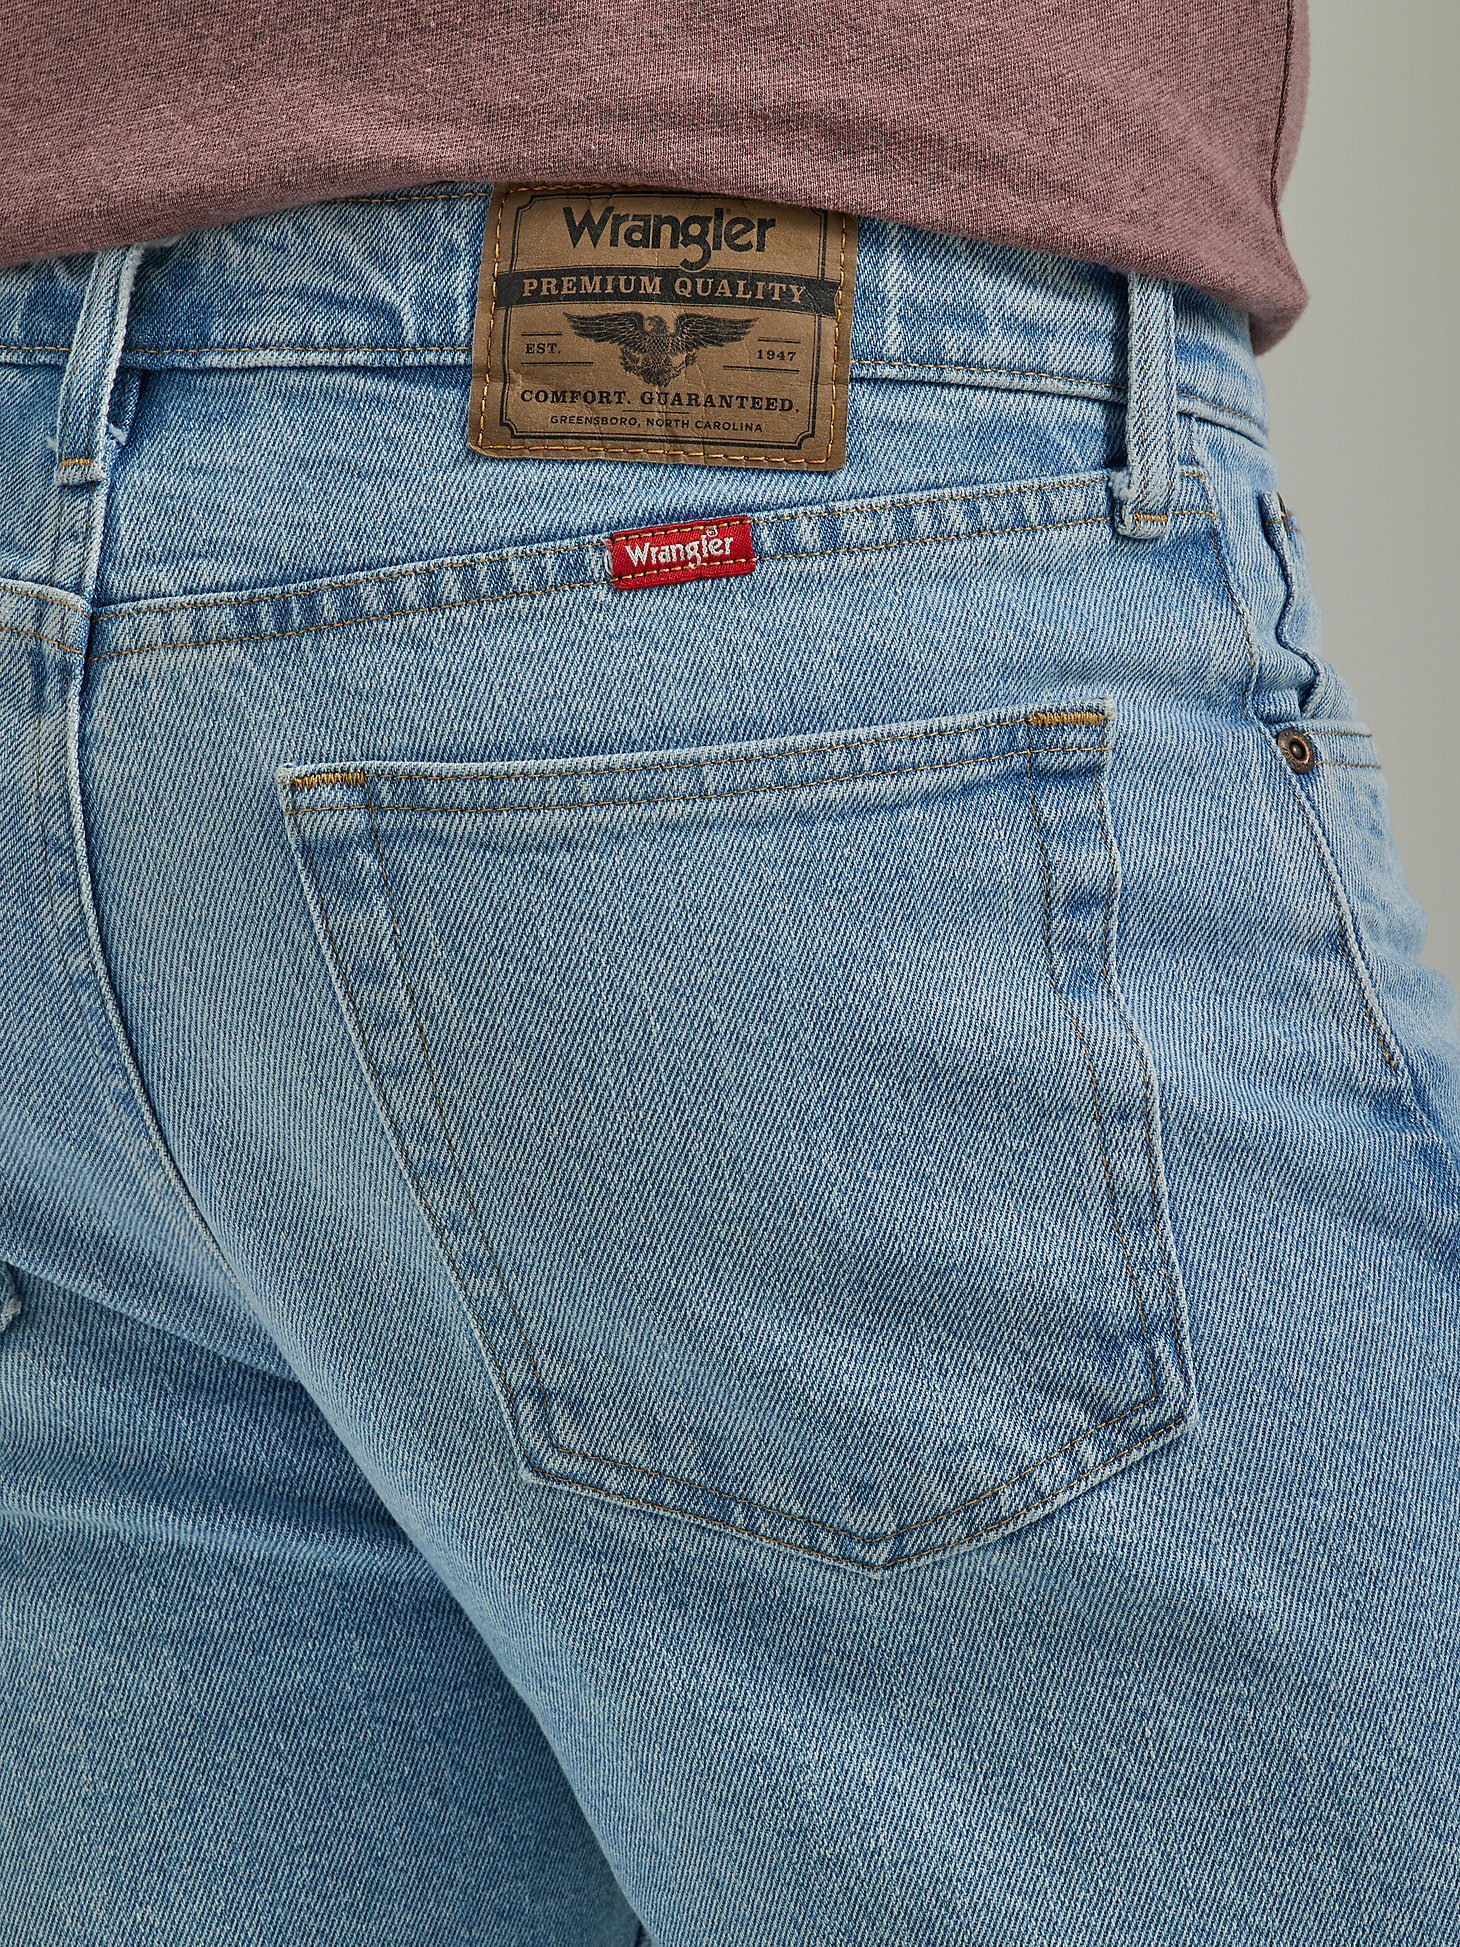 Men's Wrangler® Five Star Premium 5-pocket Relaxed Denim Short in Light Bleach alternative view 3